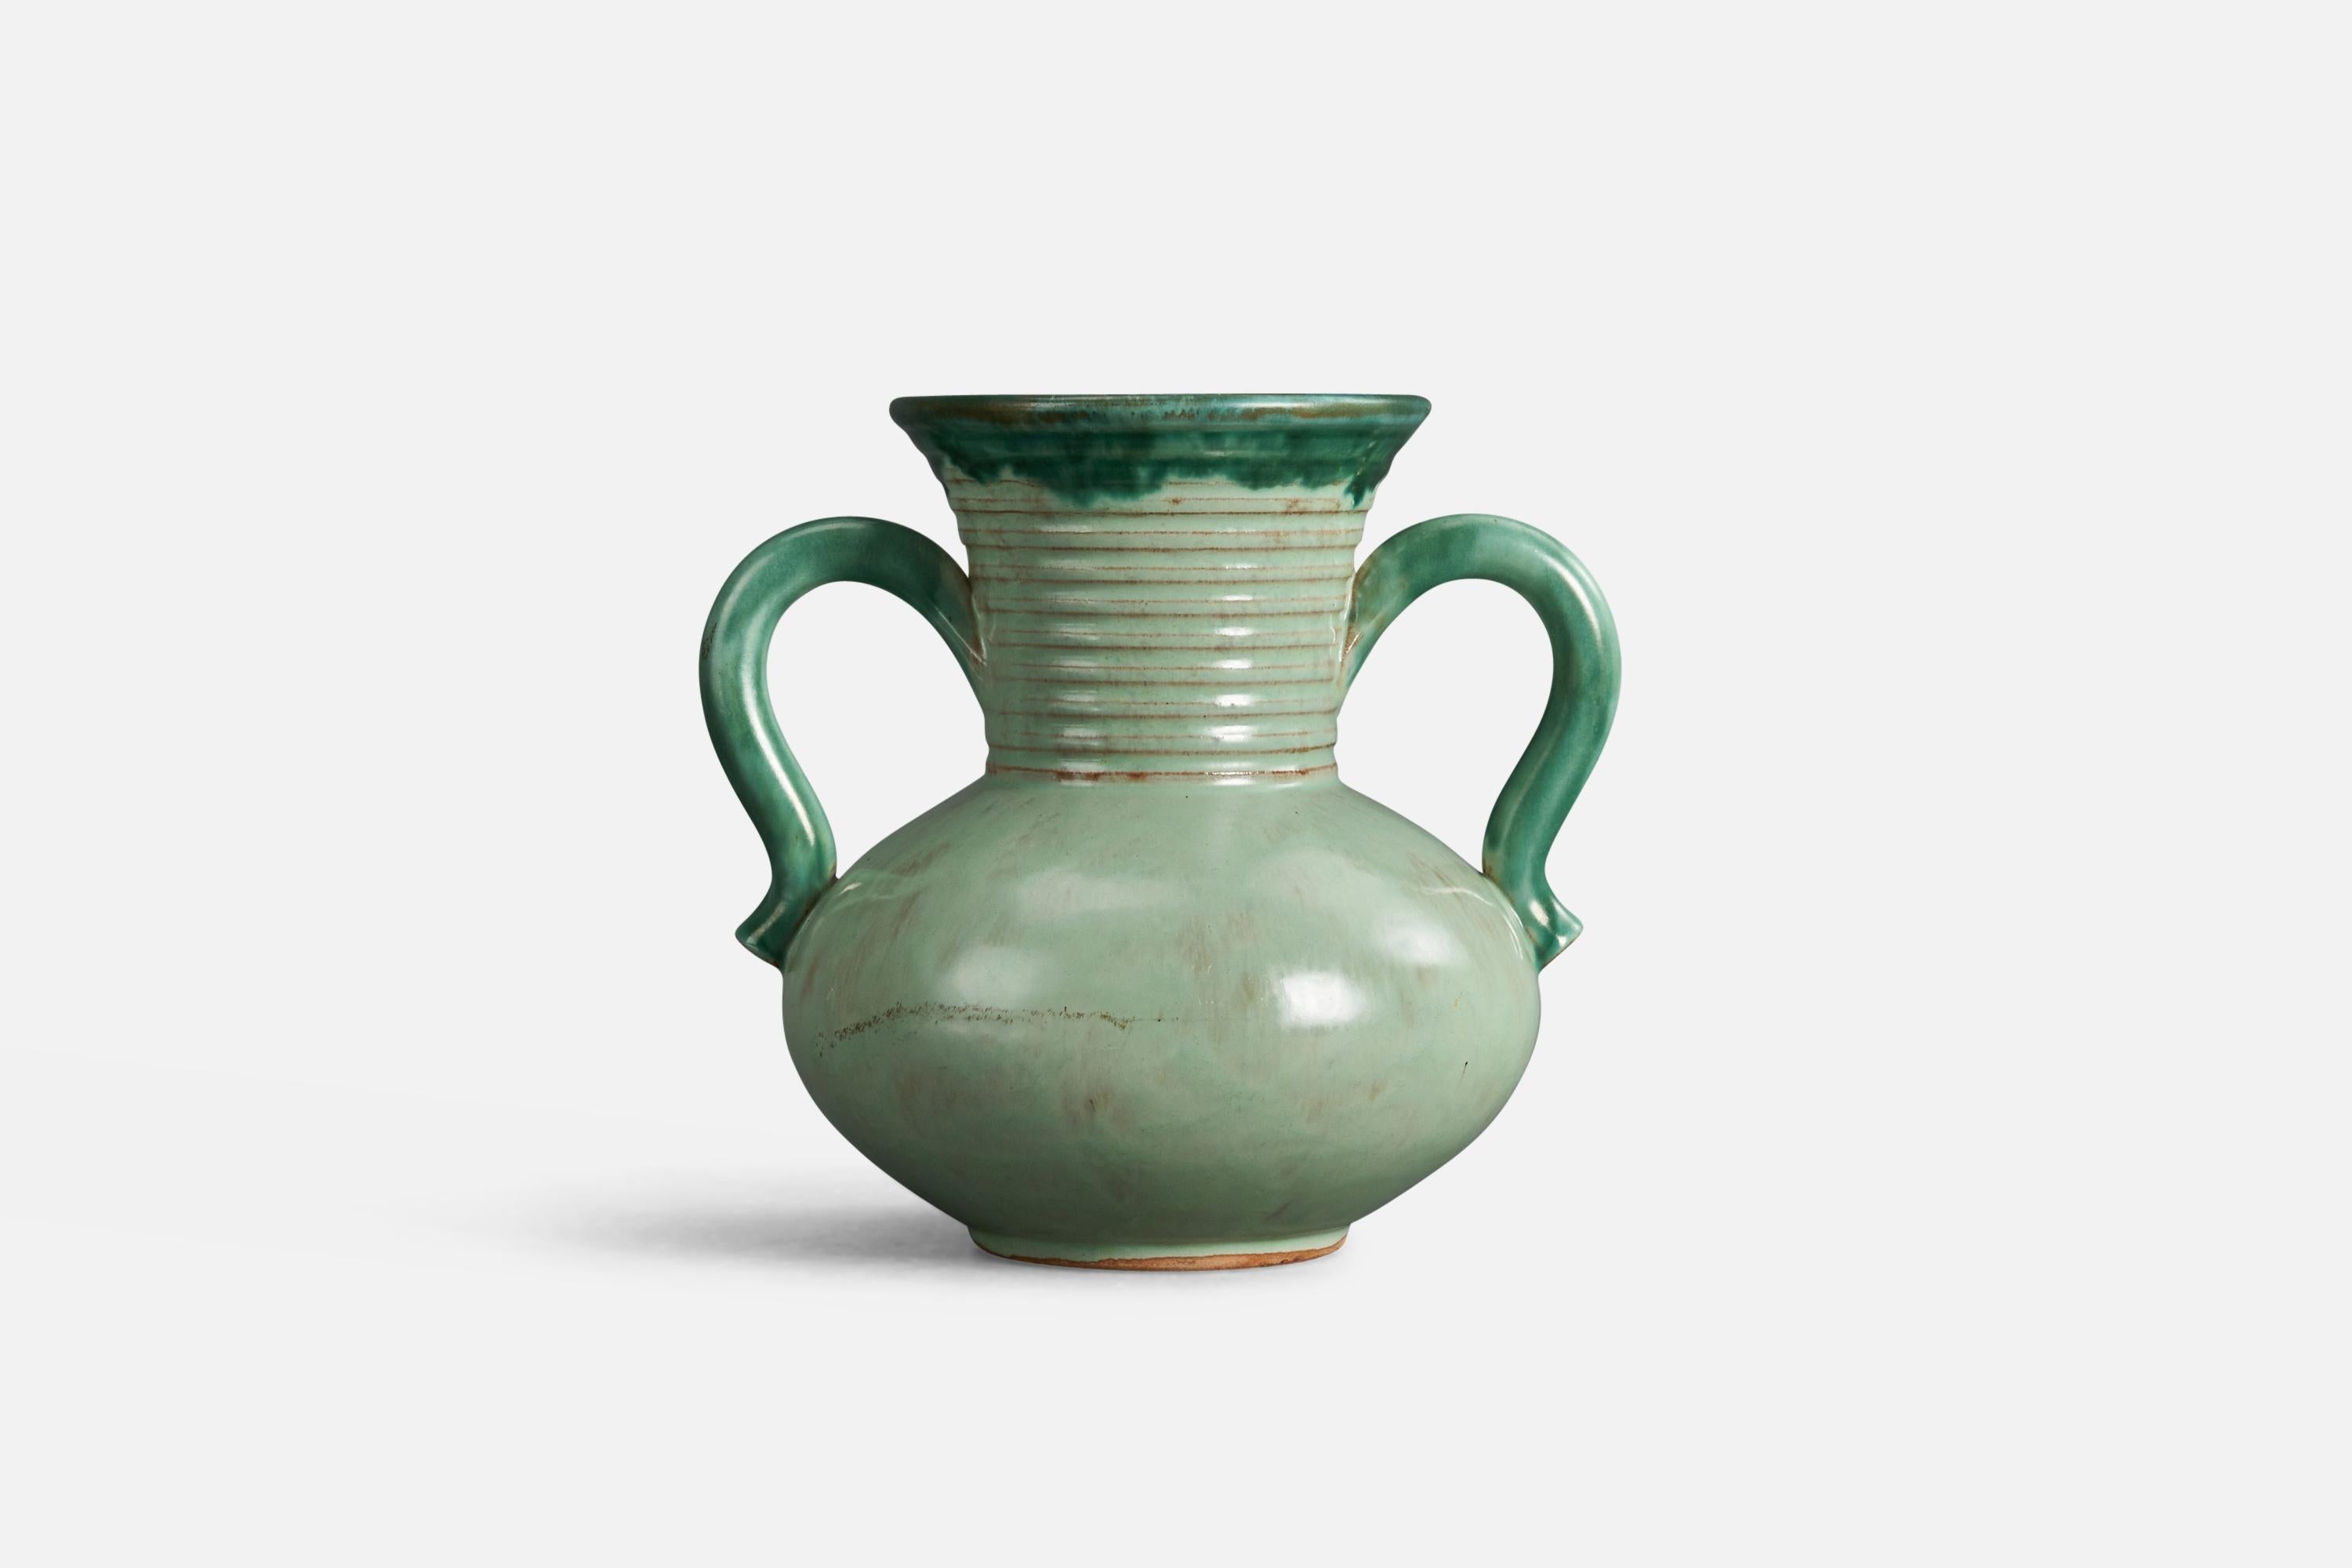 A brass vase designed by a Christer Heijl and produced by Töreboda, Sweden, 1940s.